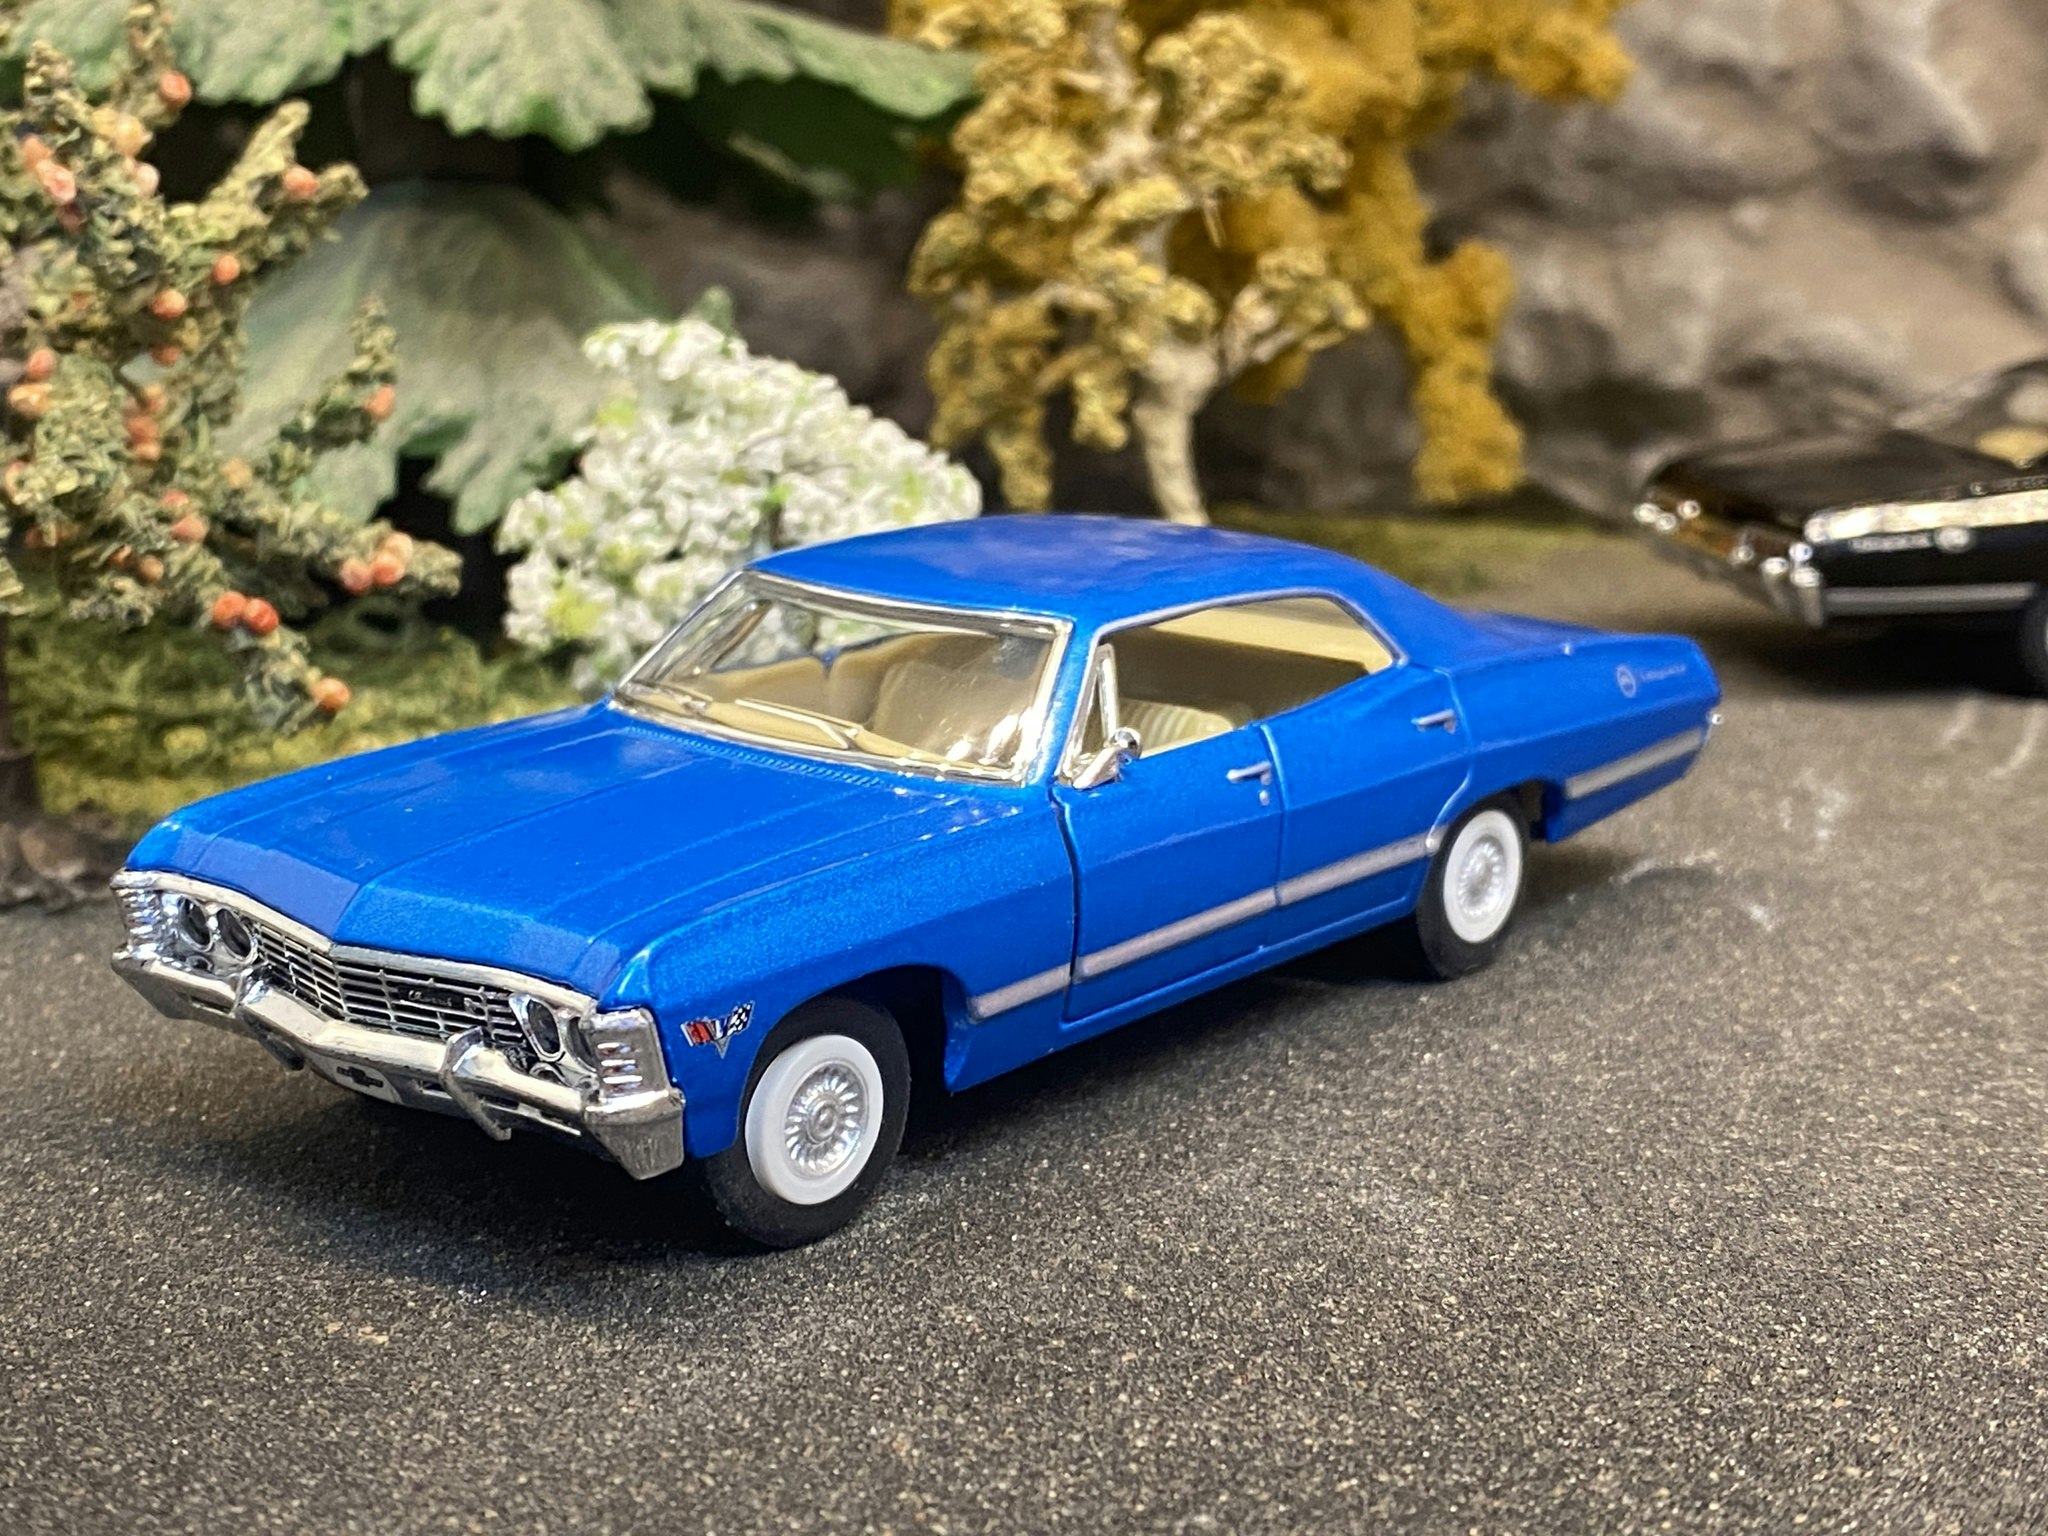 Skala 1/43 Chevrolet Impala 1967, Blue fr Kinsmart